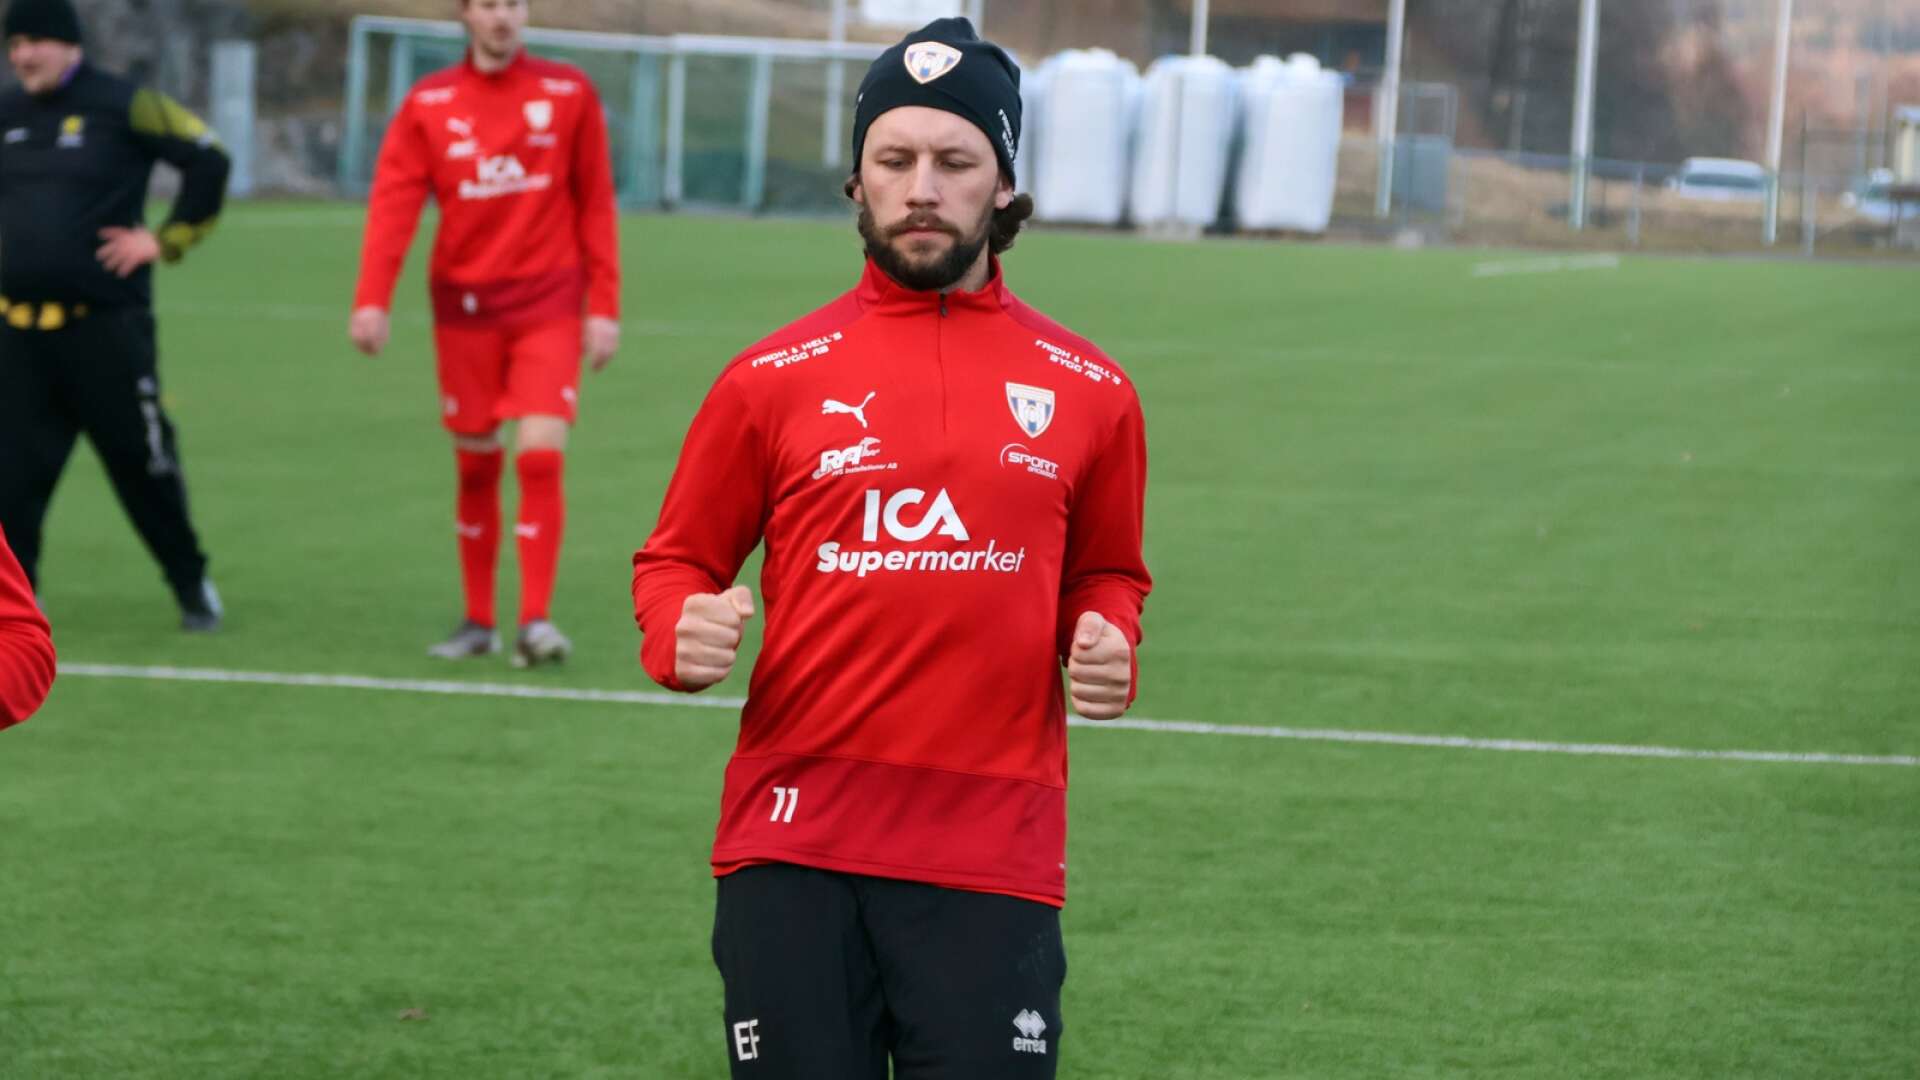 Trotjänaren Erik Fredriksson blev stor hjälte med tre mål mot Ellenö IK.